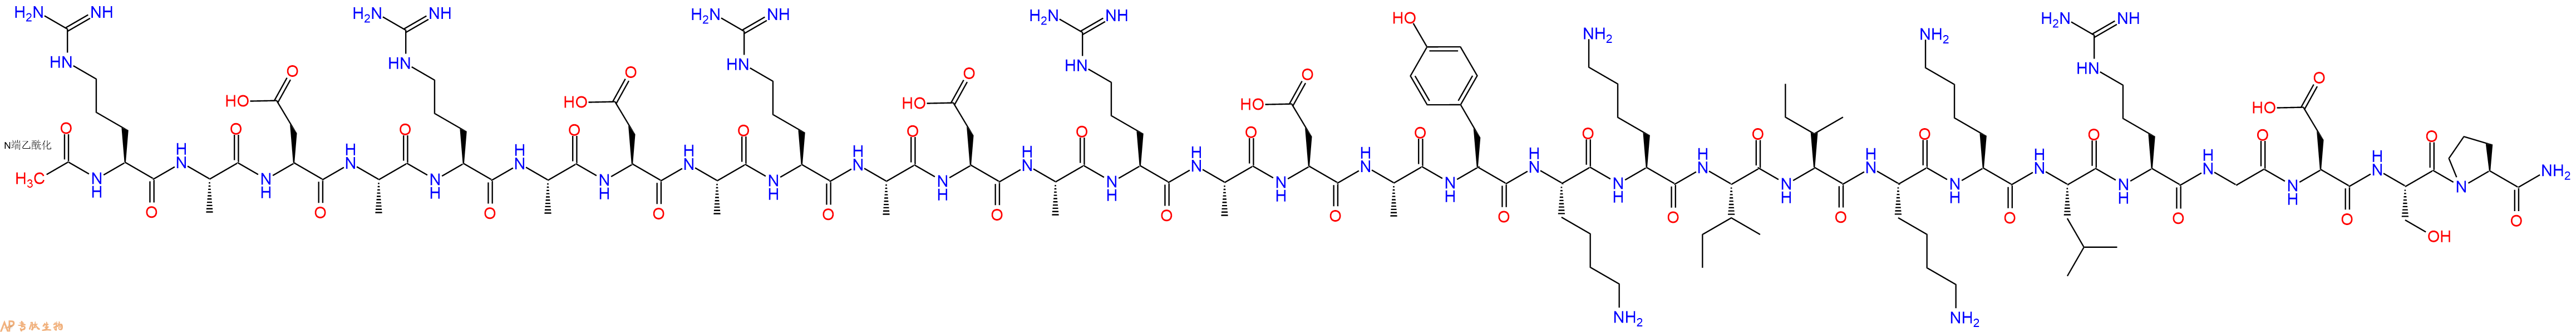 专肽生物产品自聚肽RADA16+黏附序列RGDSP+肝素结合域YKKIIKKL